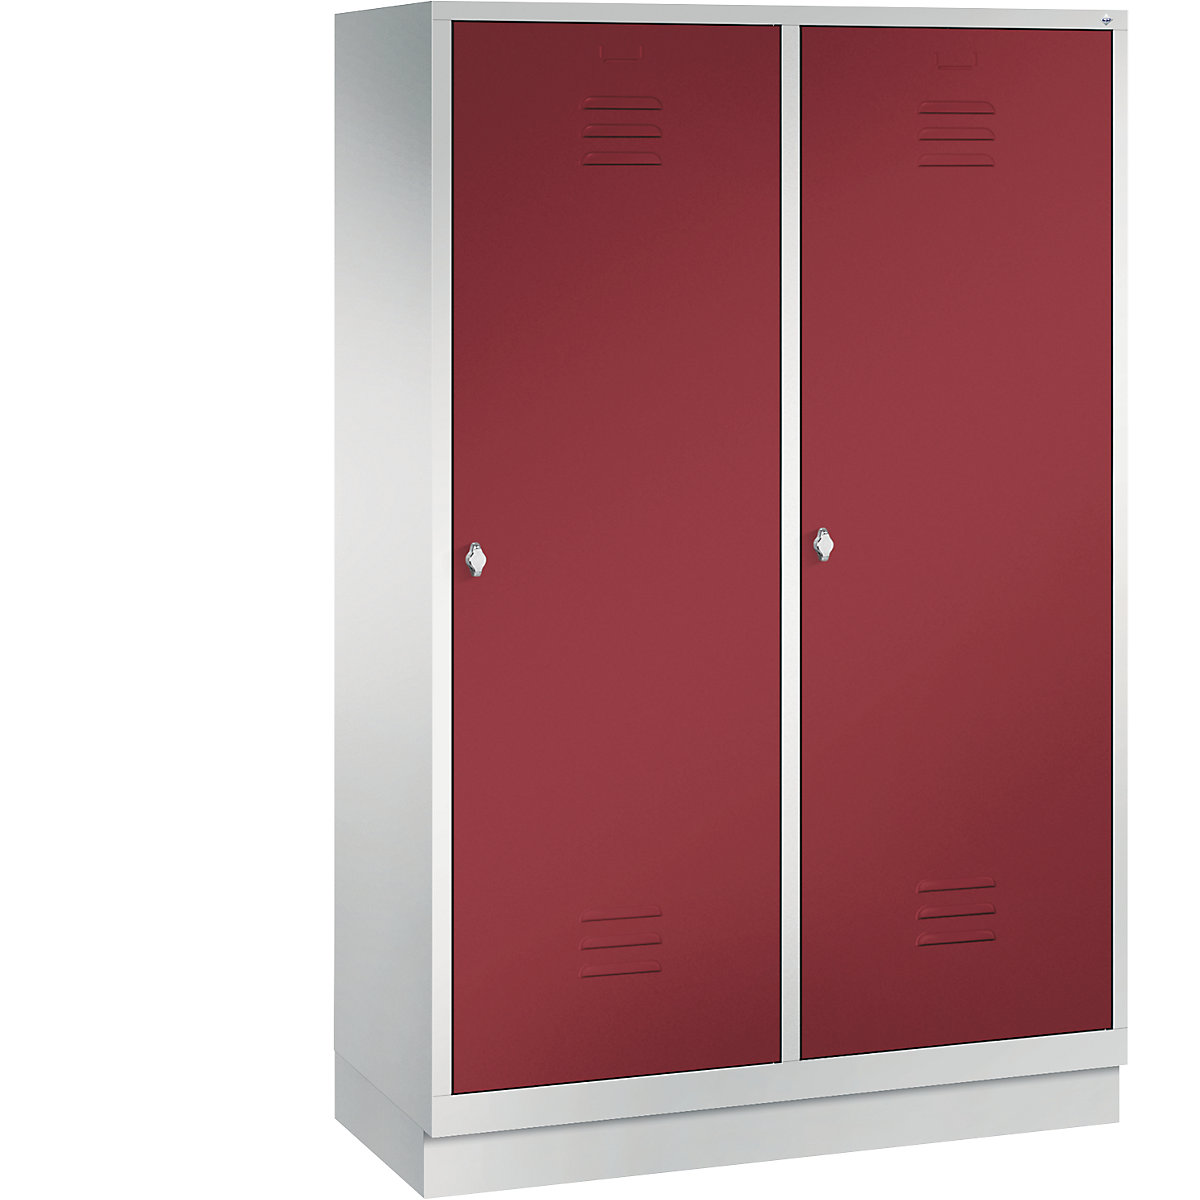 CLASSIC šatníková skriňa so soklom, dvere prekrývajúce 2 boxy – C+P, 4 boxy, šírka boxu 300 mm, svetlošedá / rubínová červená-14